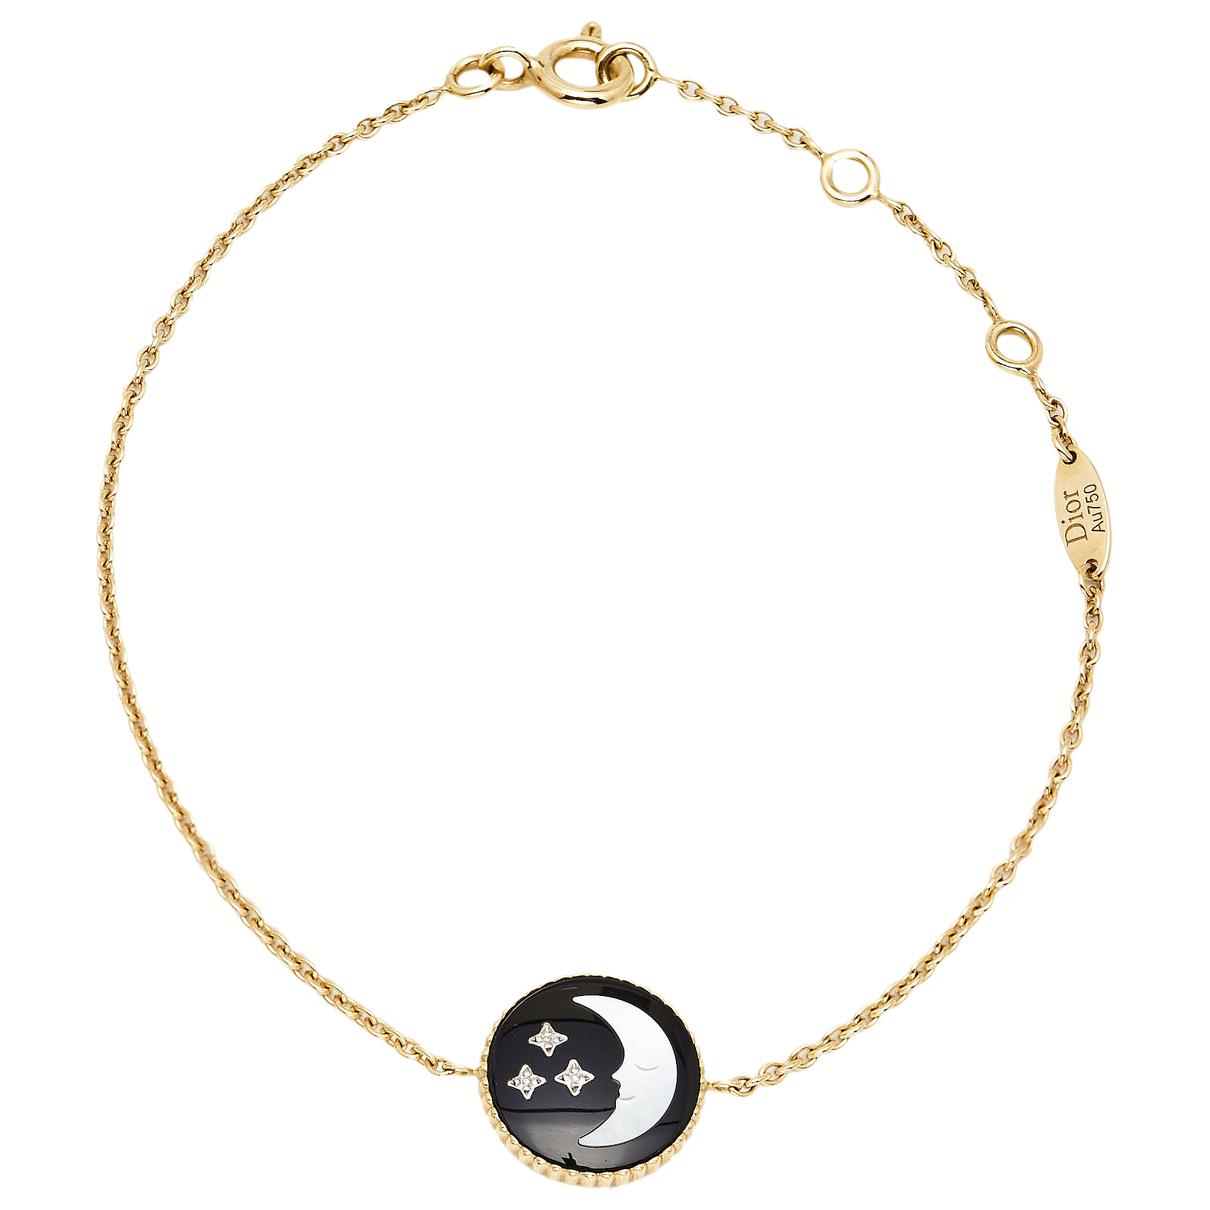 LVXNBA Chain Links Bracelet S00 - Fashion Jewelry MP3053